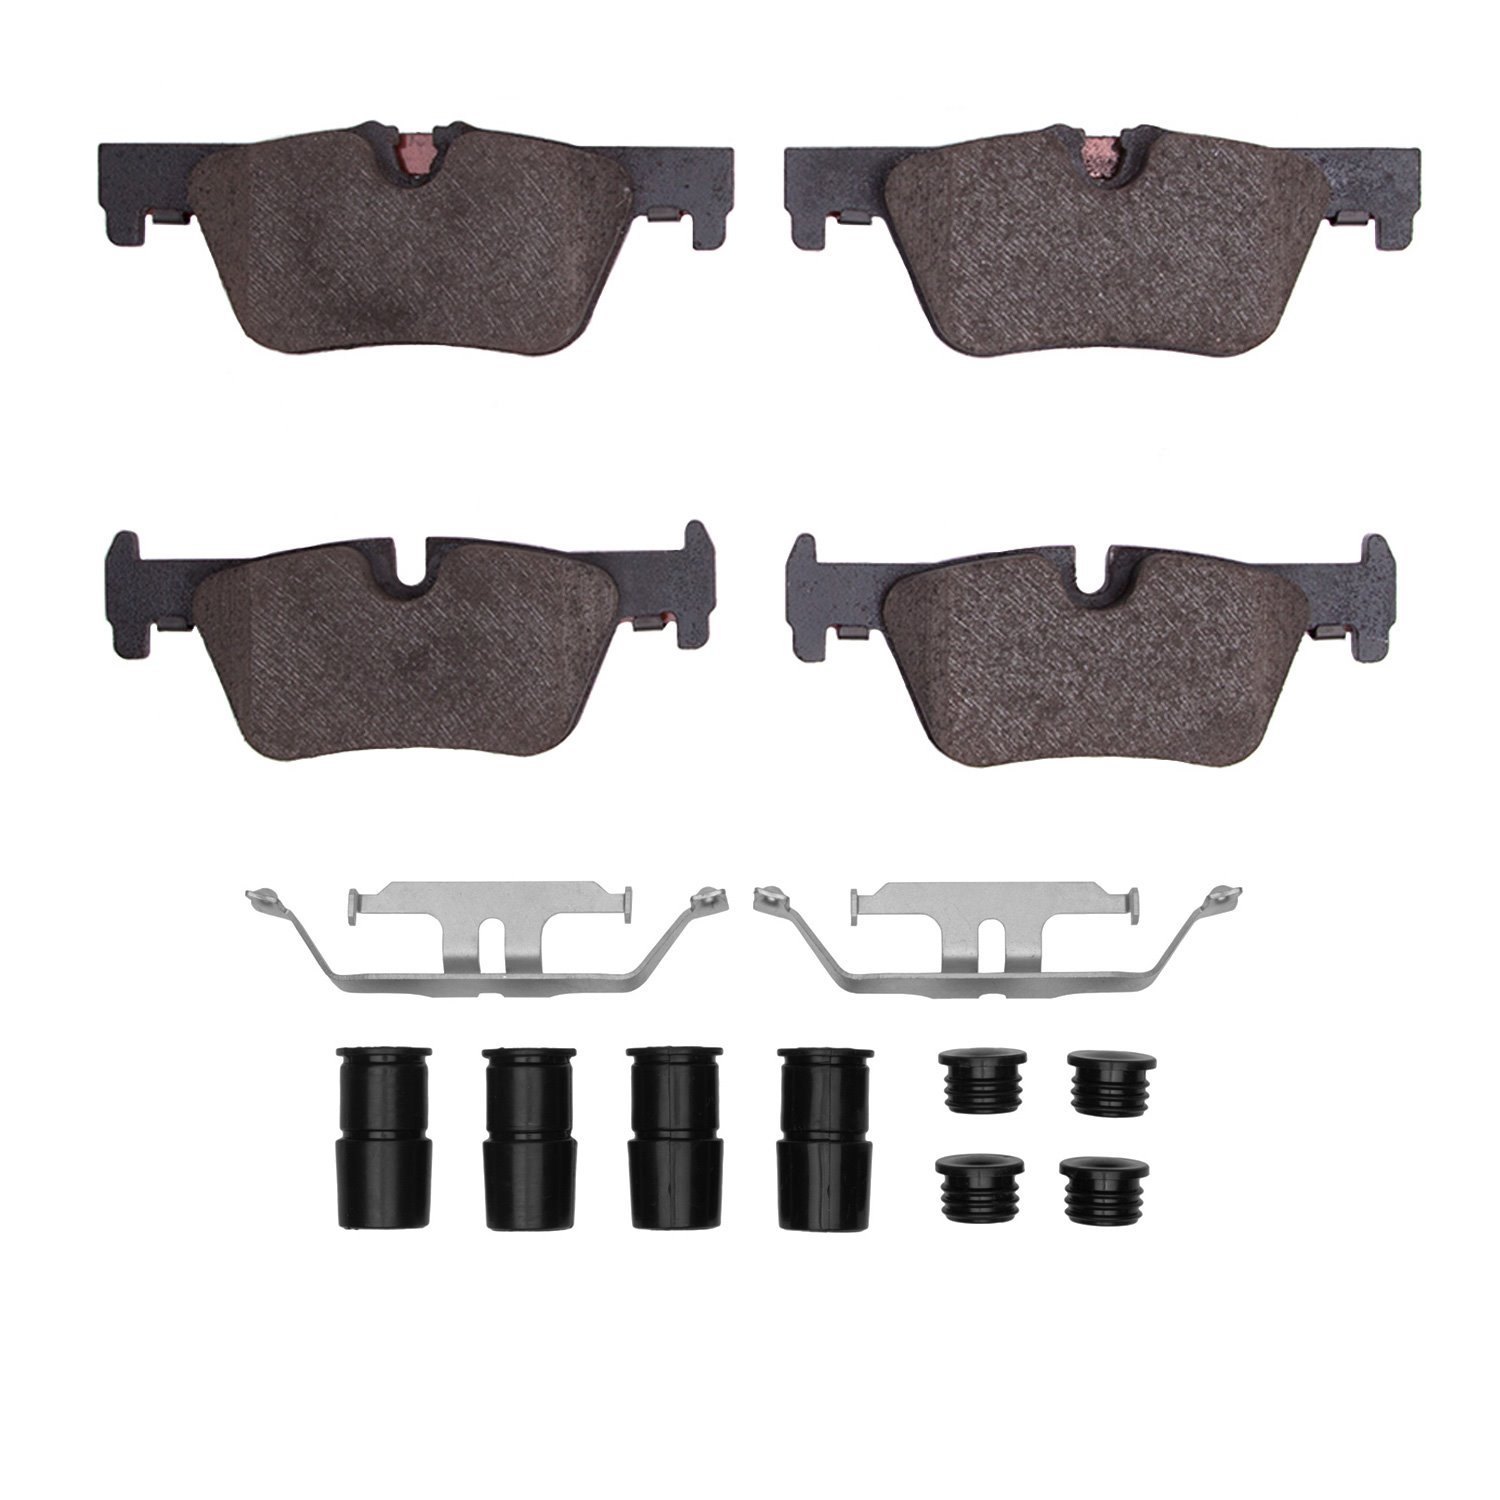 1600-1613-01 5000 Euro Ceramic Brake Pads & Hardware Kit, 2012-2021 BMW, Position: Rear